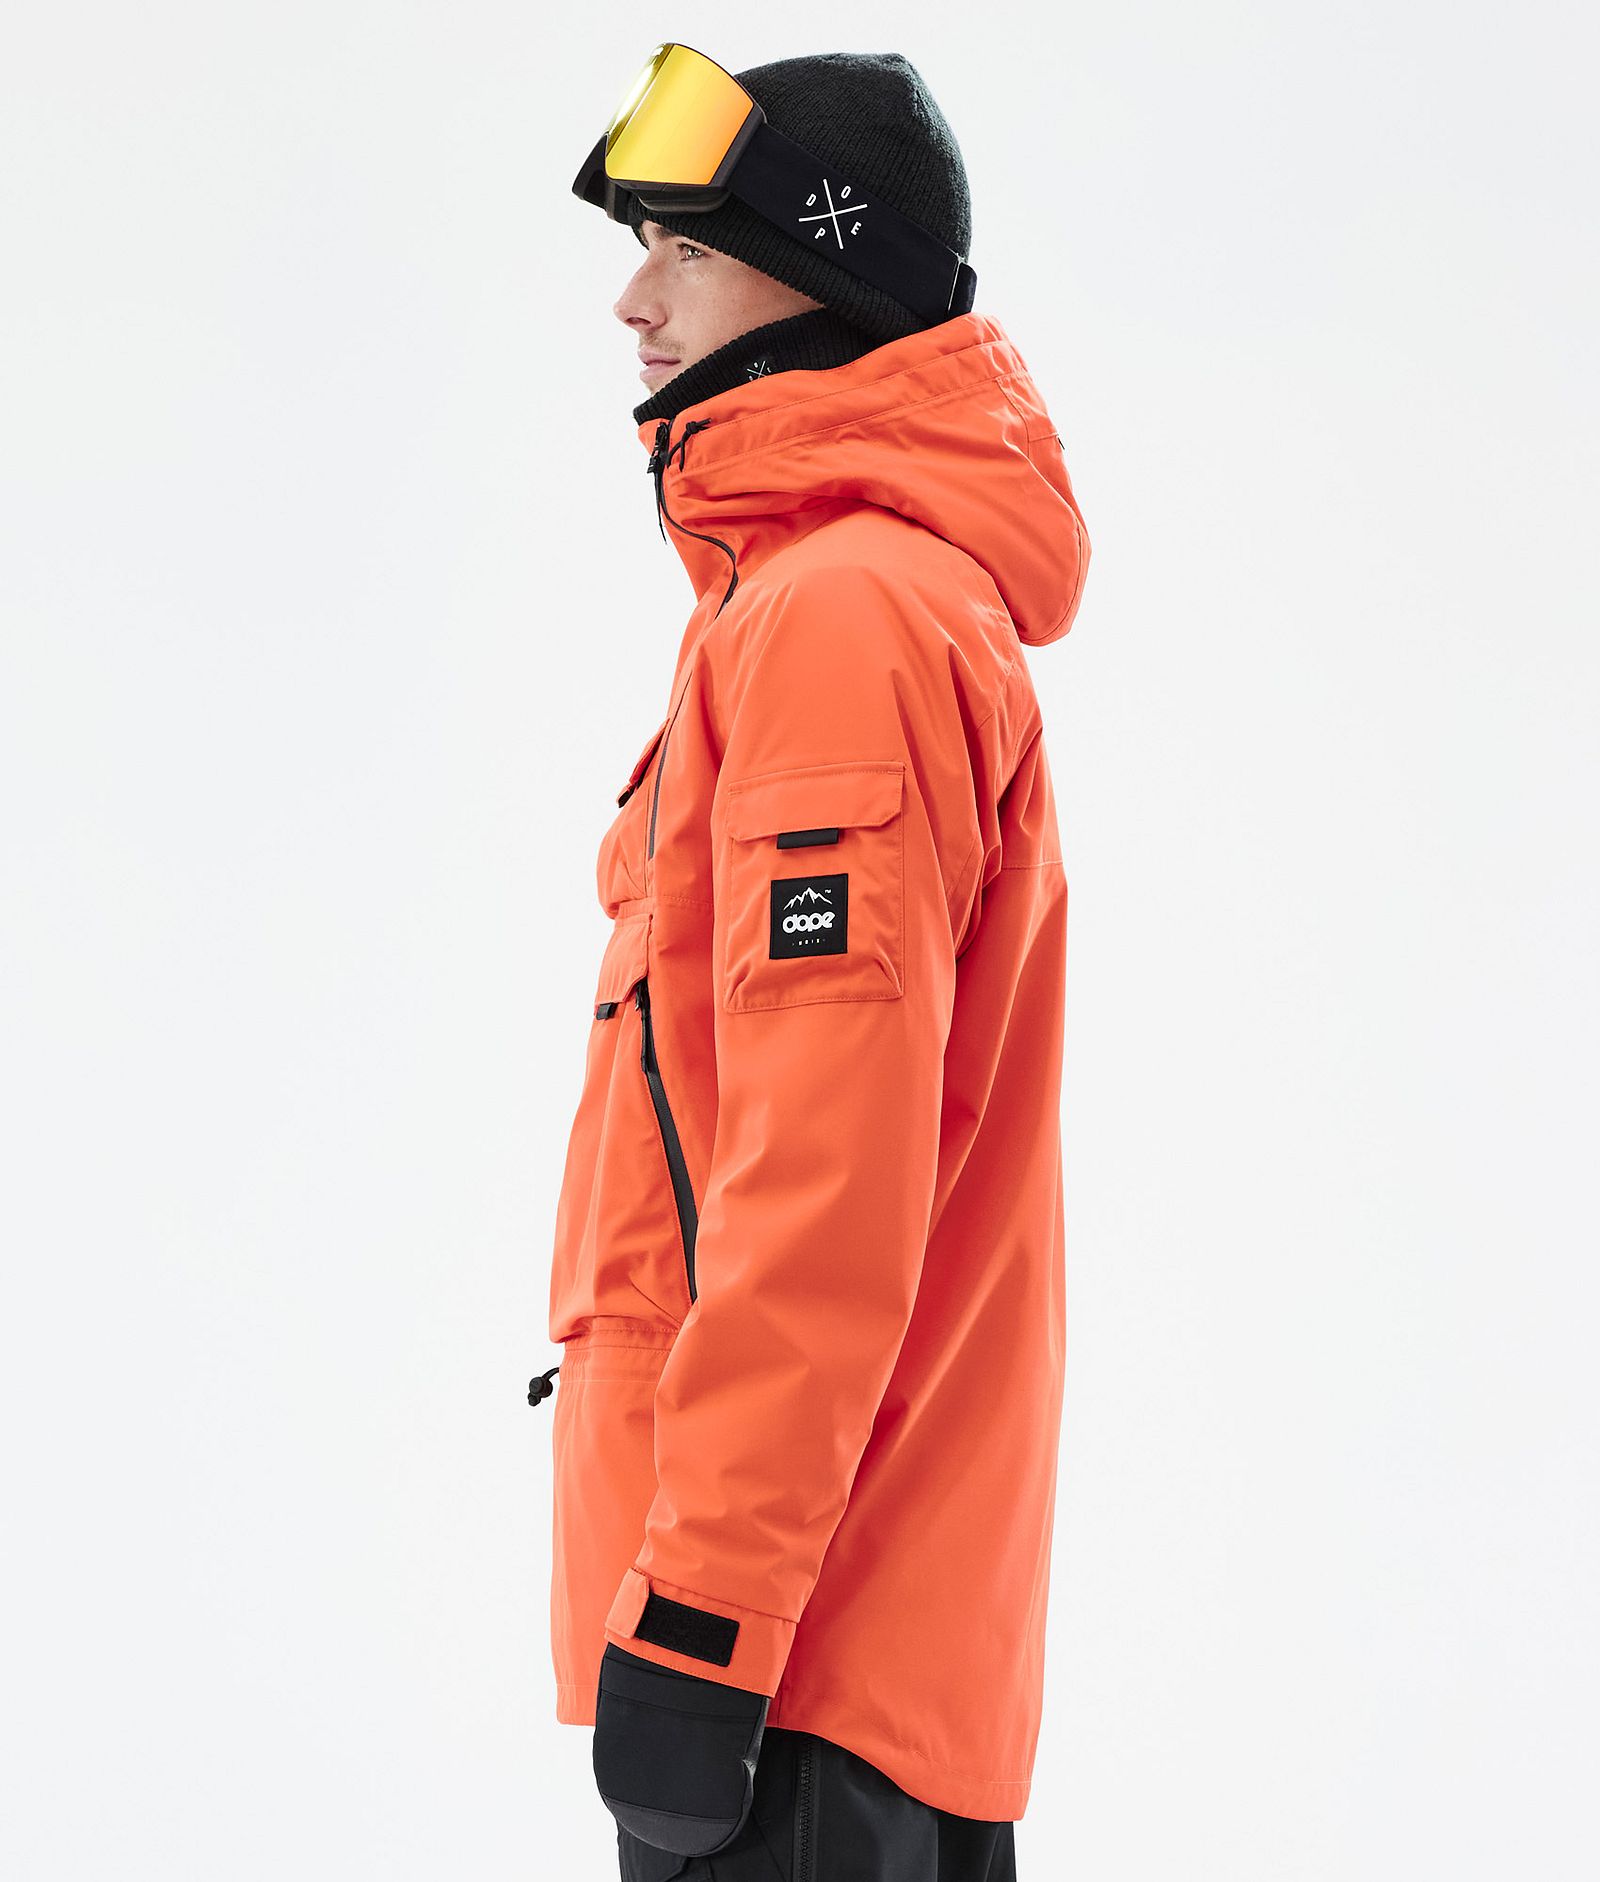 Akin Snowboard Jacket Men Orange, Image 5 of 8